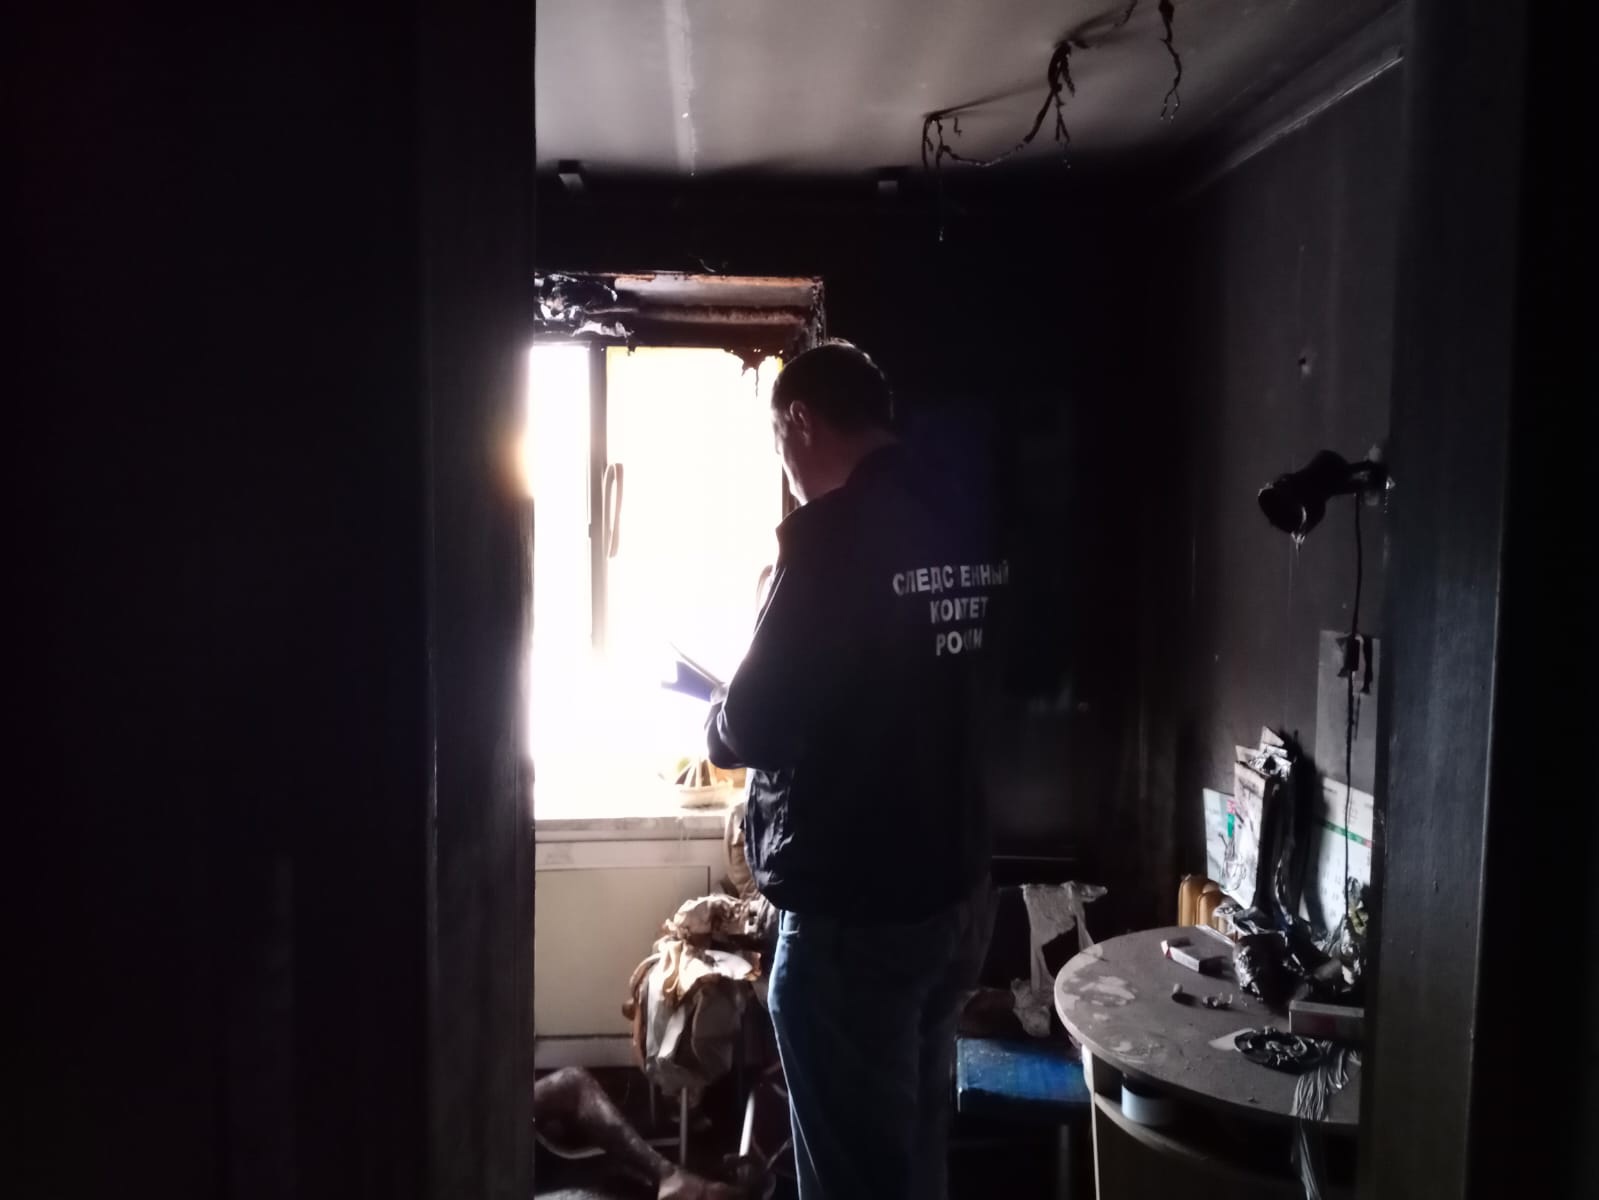 Следователи проводят проверку по смерти женщины на пожаре в Карелии